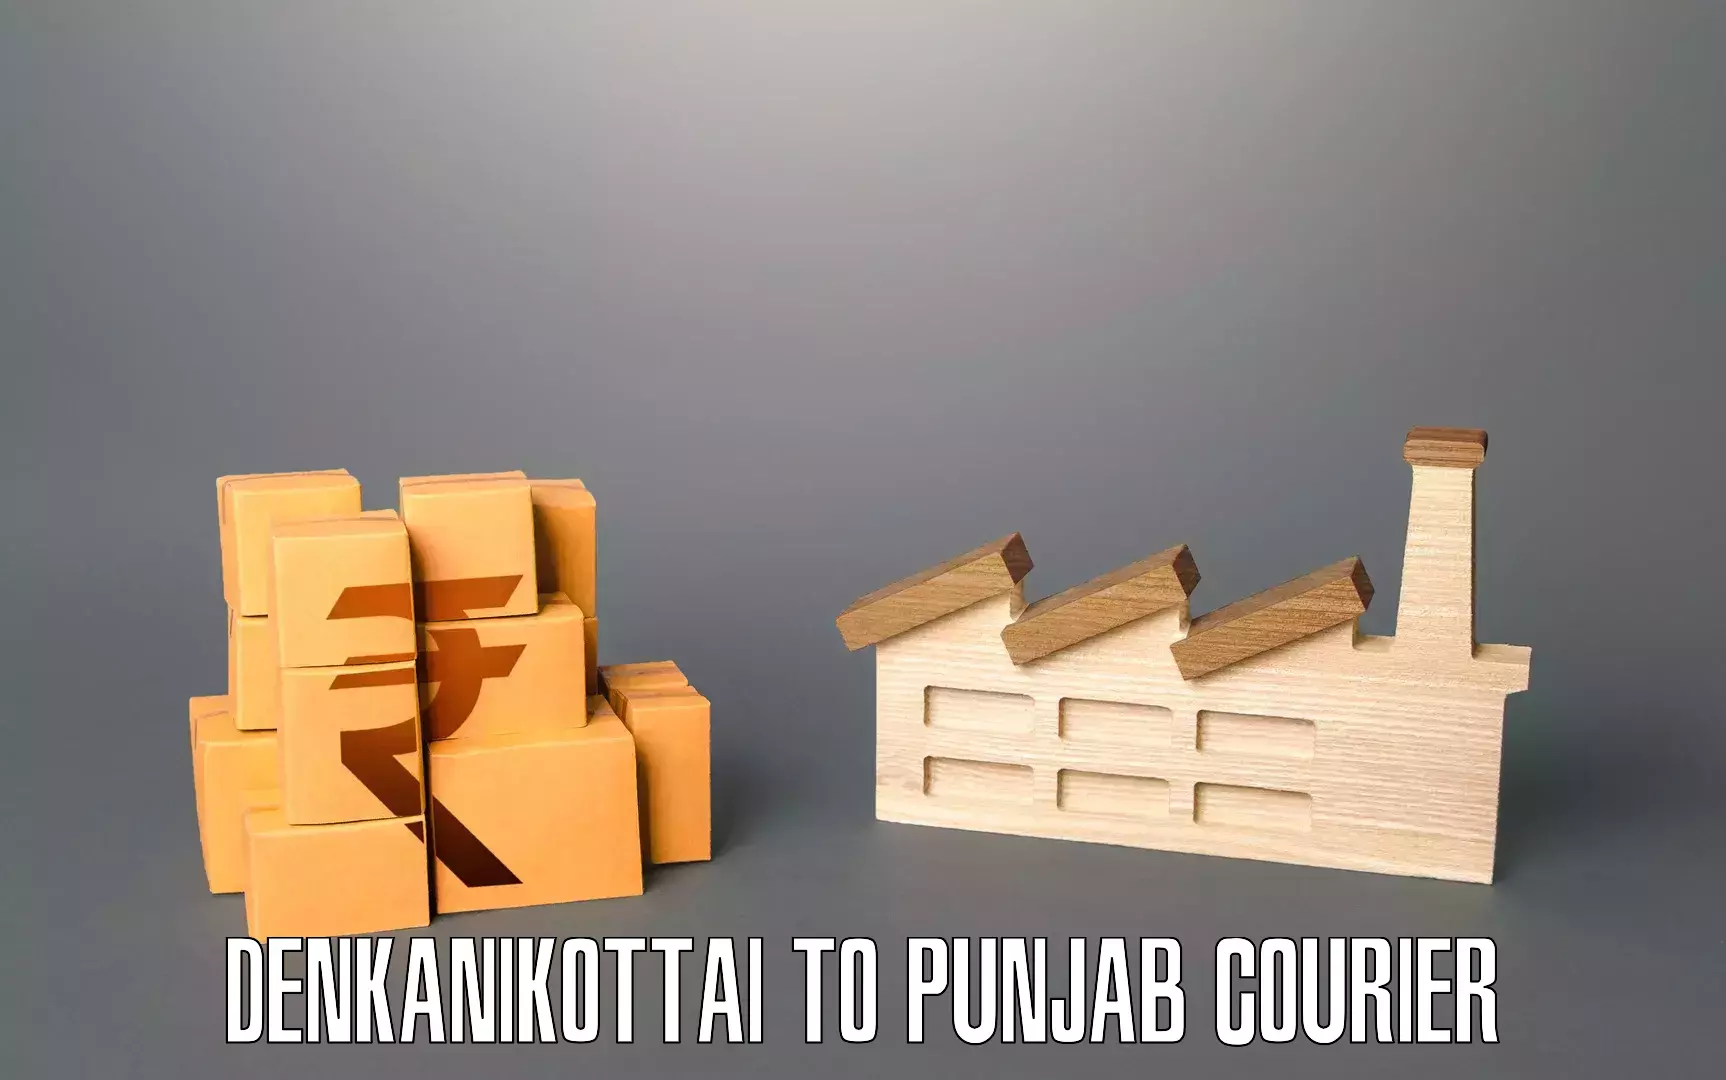 Customized furniture moving Denkanikottai to Batala